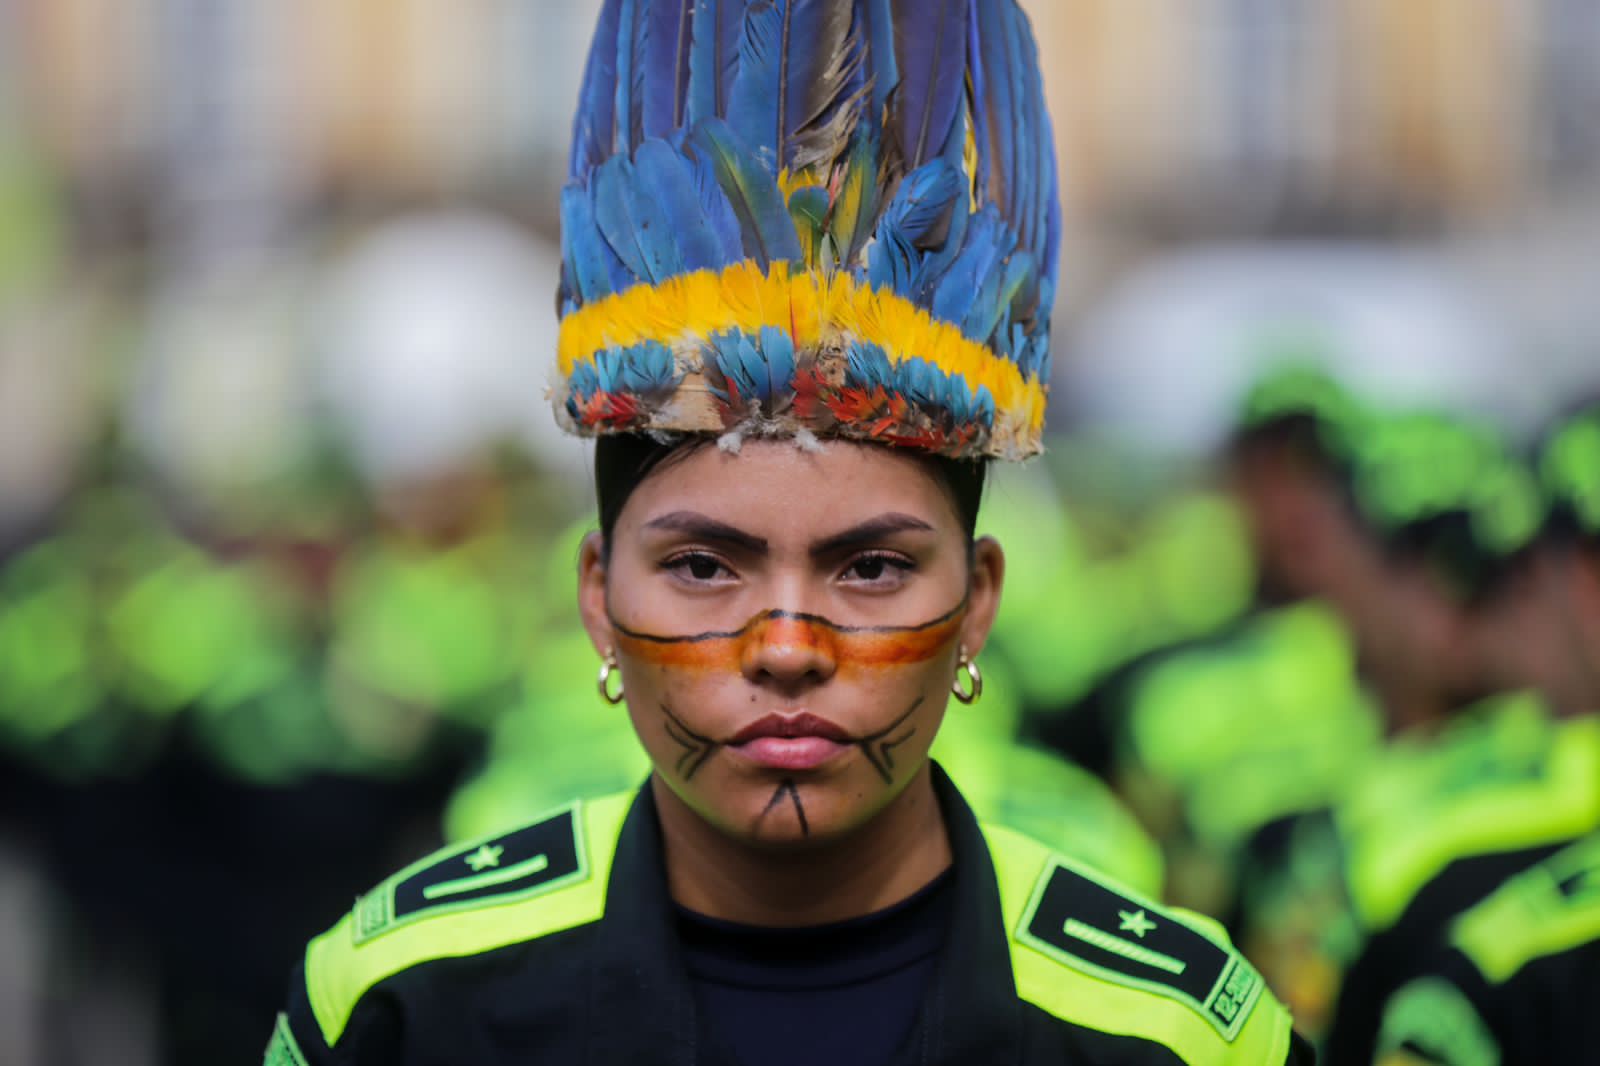 Para esta Navidad 1.500 policías reforzarán la seguridad en Bogotá La alcaldesa, Claudia López, anunció este viernes que 1.500 policías, recién graduados, llegarán a reforzar la seguridad de Bogotá, en especial de Transmilenio.